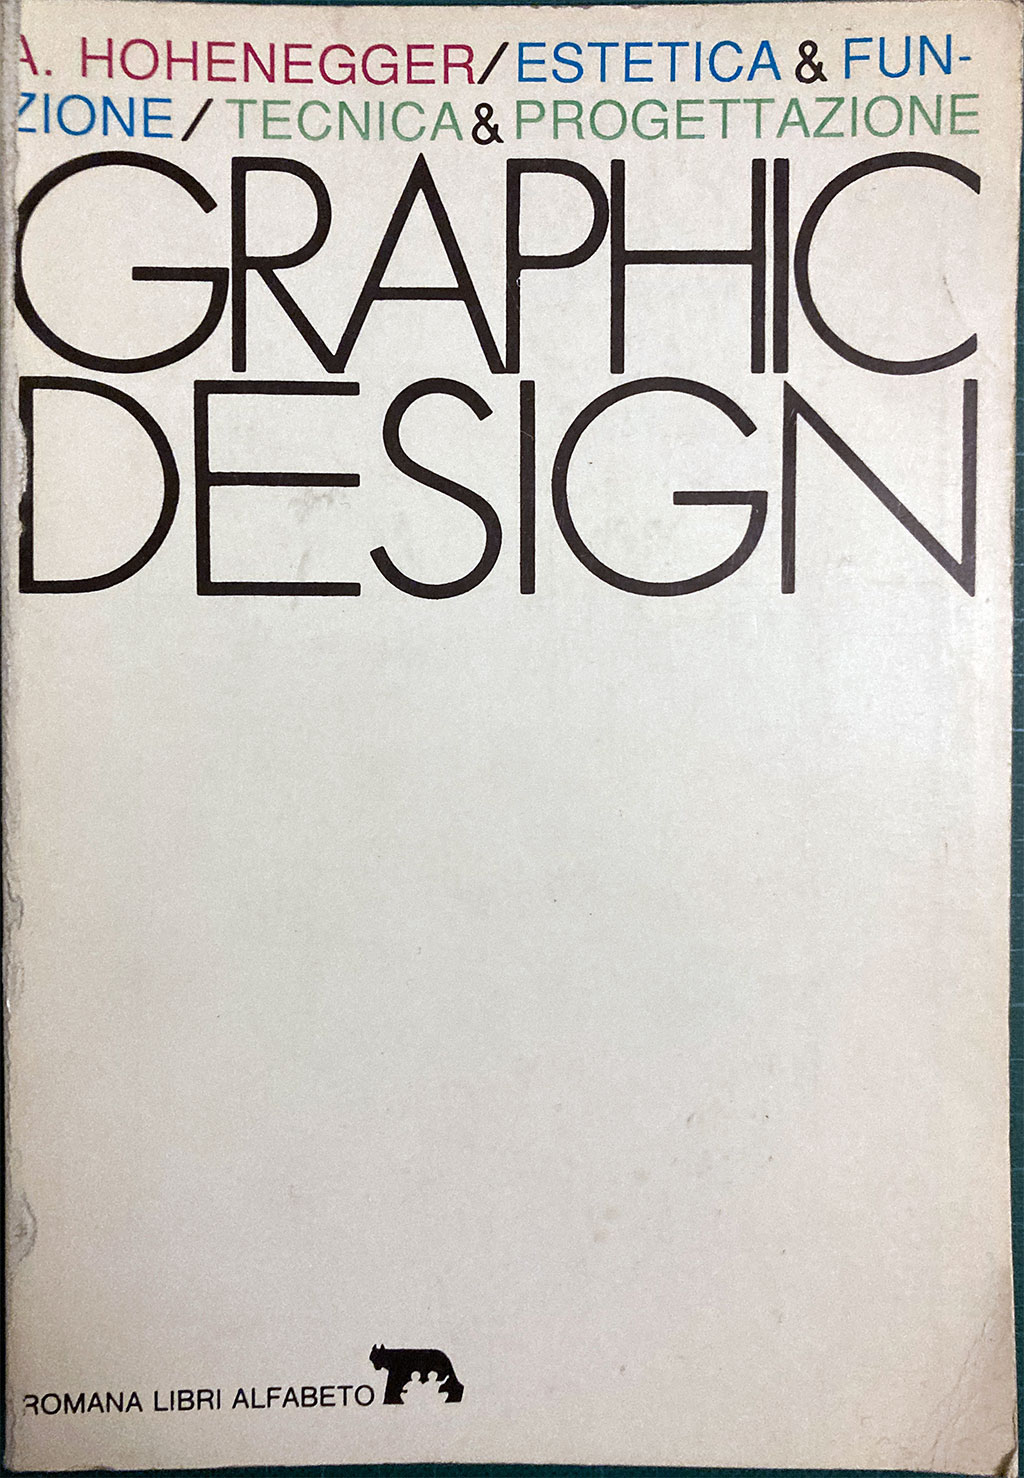 Graphic Design Estetica & Funzione/Tecnica & Progettazione Book Cover